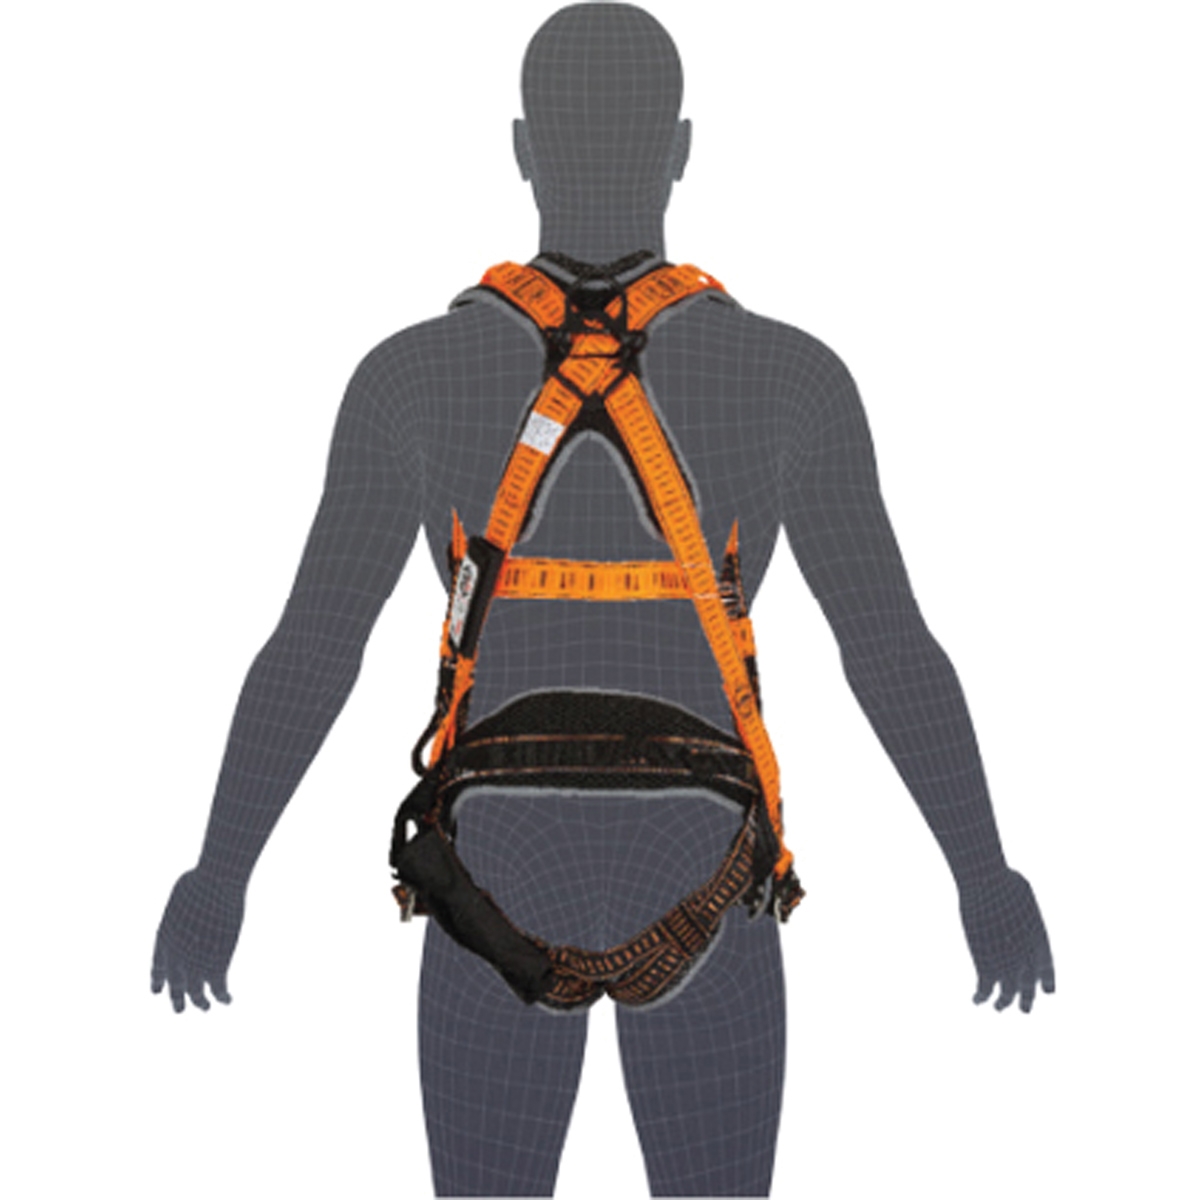 LINQ Elite Multi-Purpose Harness - Maxi (XL-2XL)